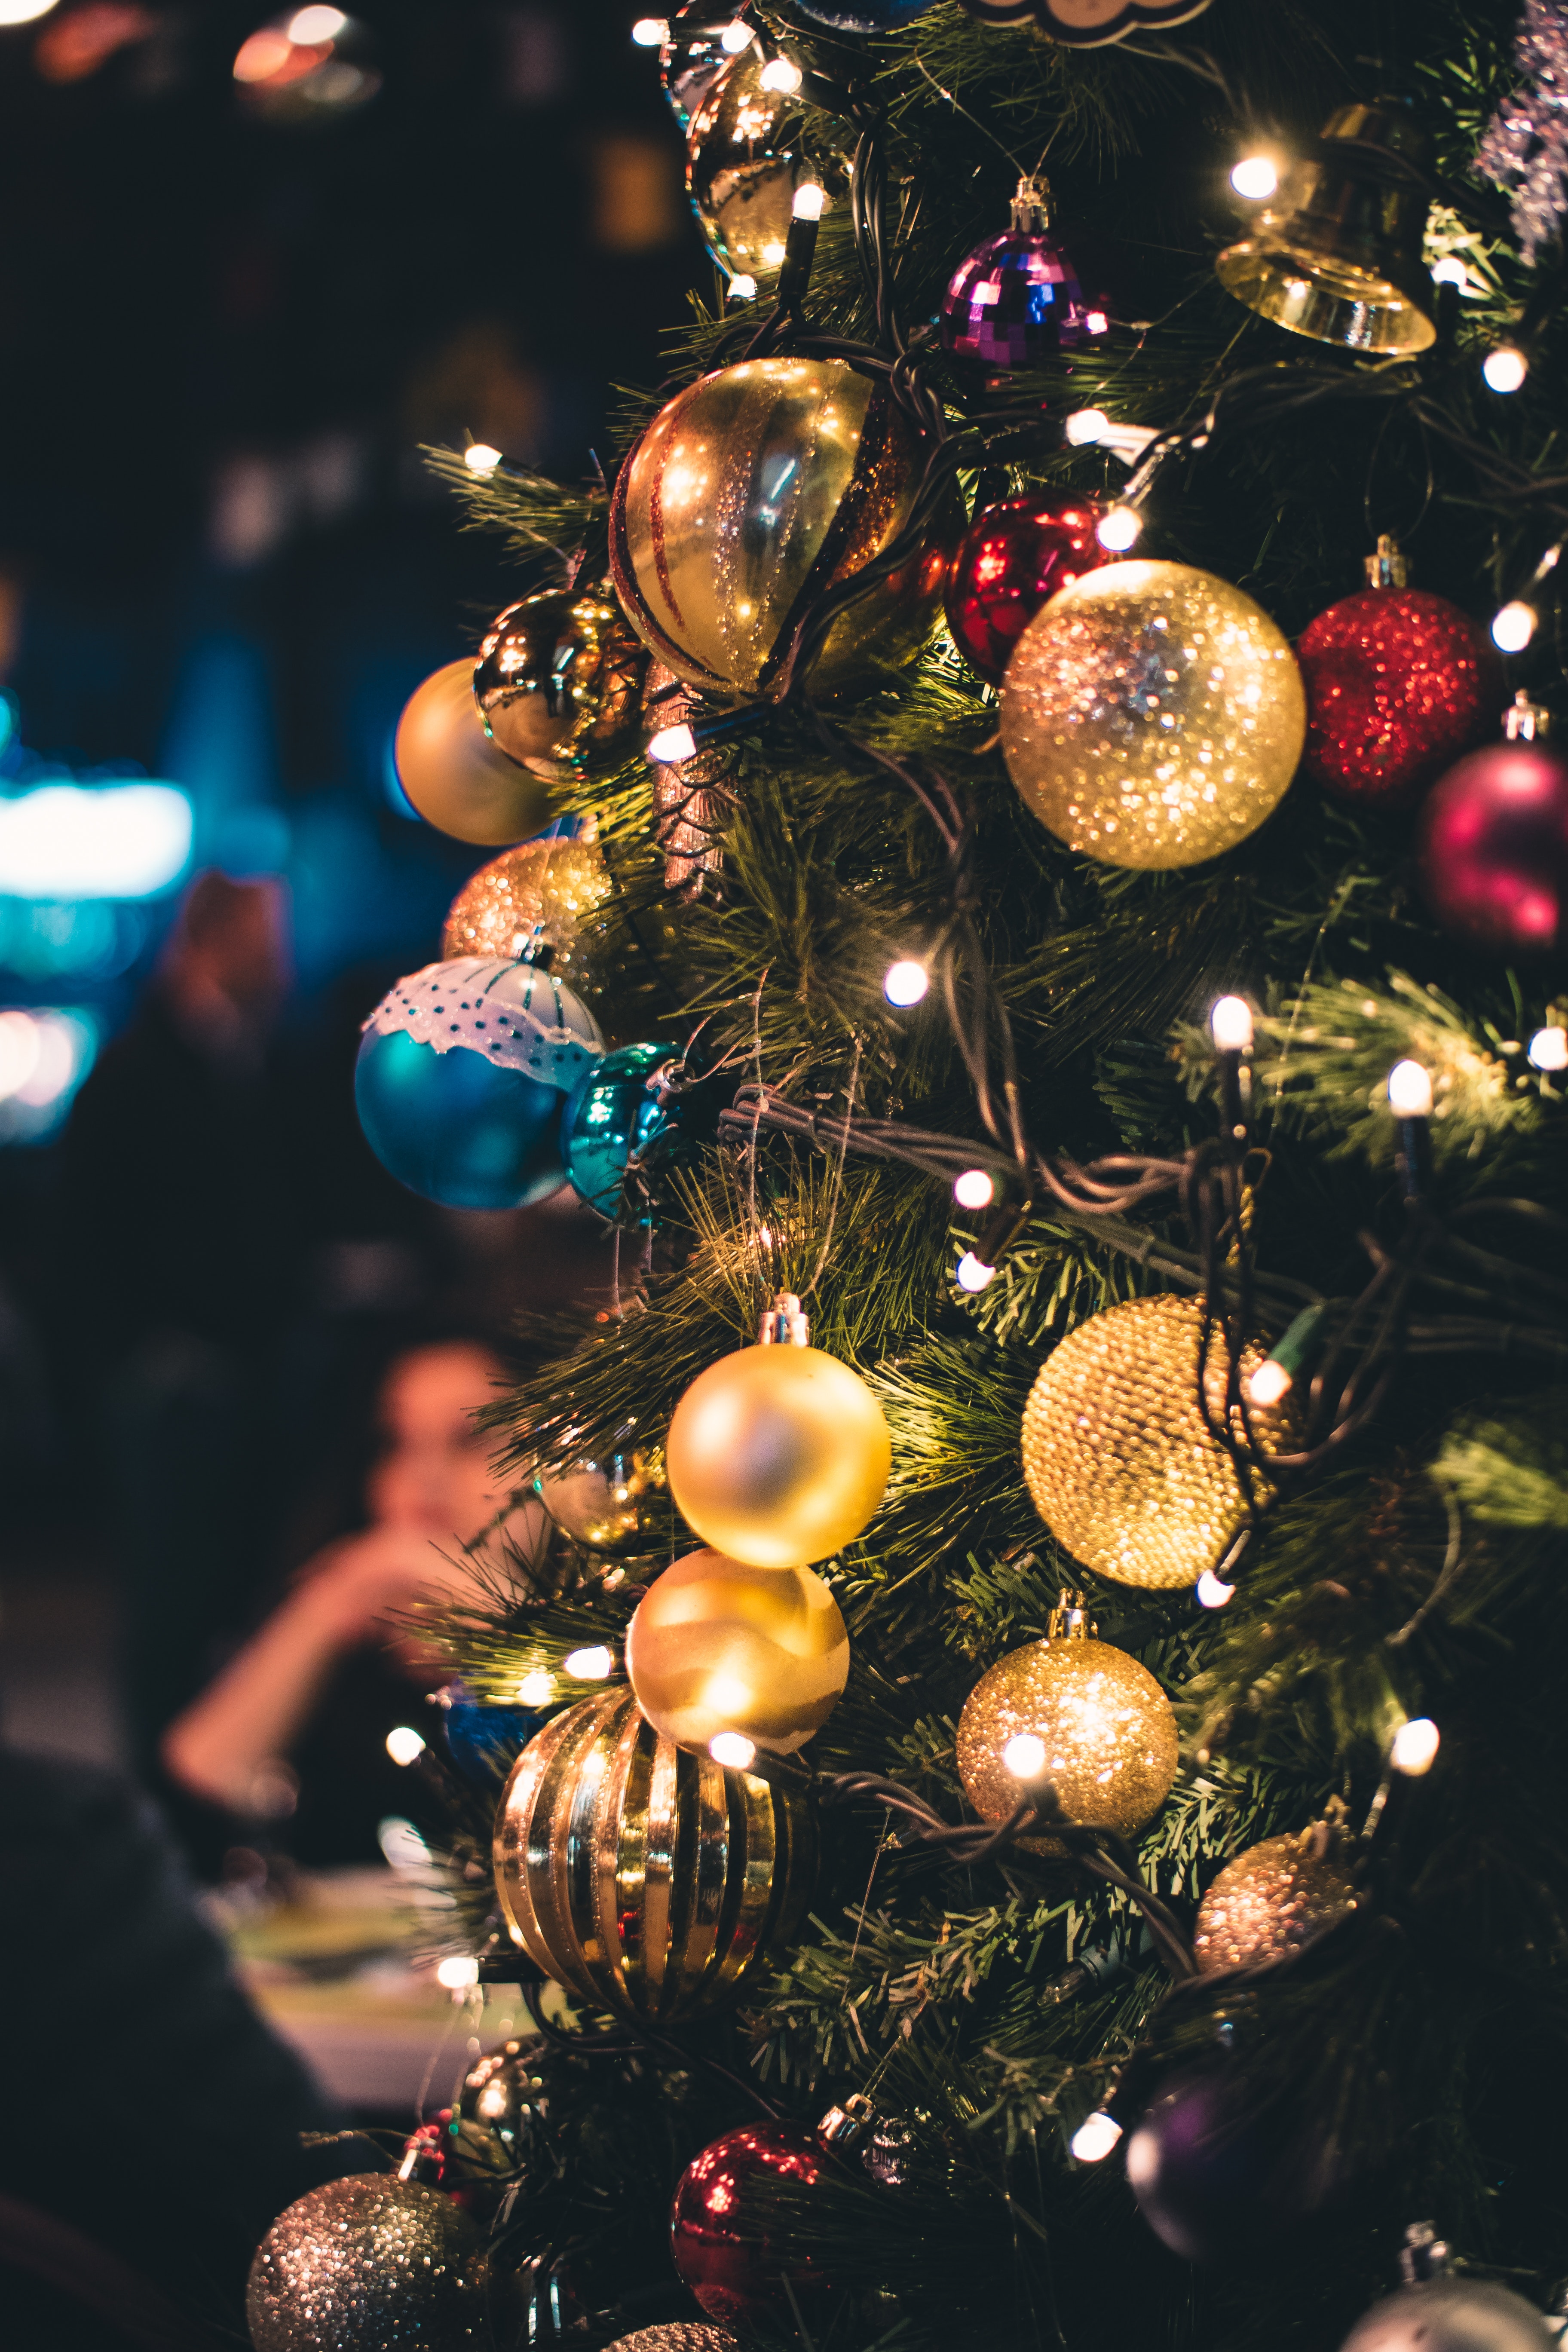 50797 Salvapantallas y fondos de pantalla Árbol De Navidad en tu teléfono. Descarga imágenes de árbol de navidad, navidad, vacaciones, año nuevo, brillar, brillo, decoraciones de navidad, juguetes de árbol de navidad gratis